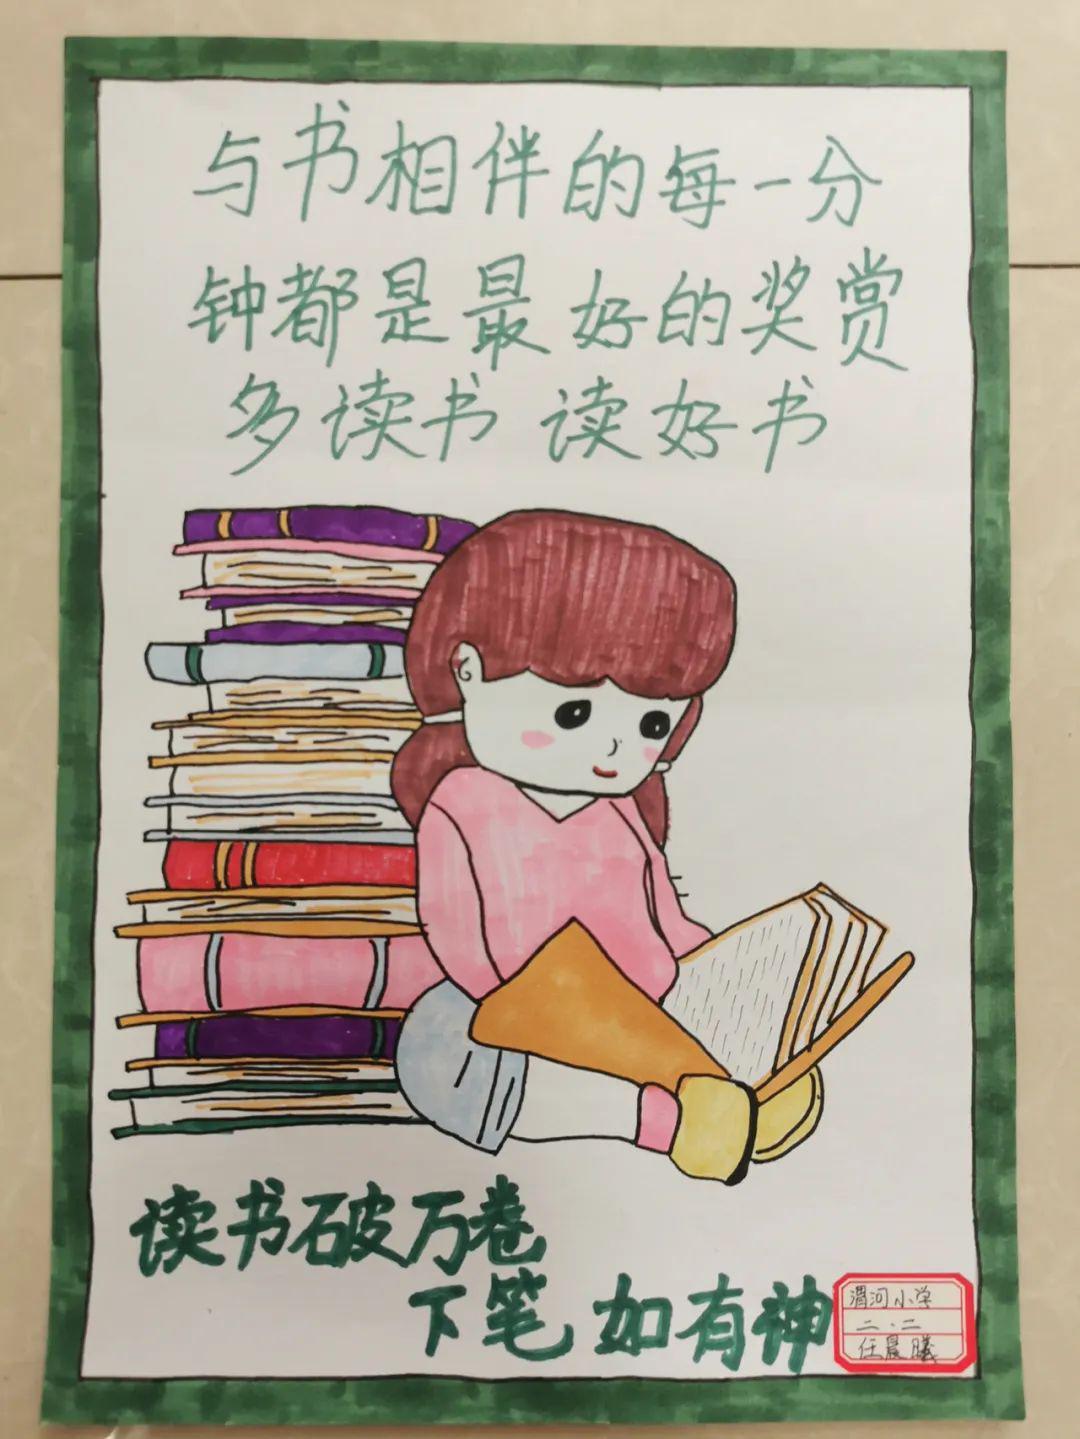 【渭河61校园动态】巧手绘美图  享受读书乐——渭河小学读书分享